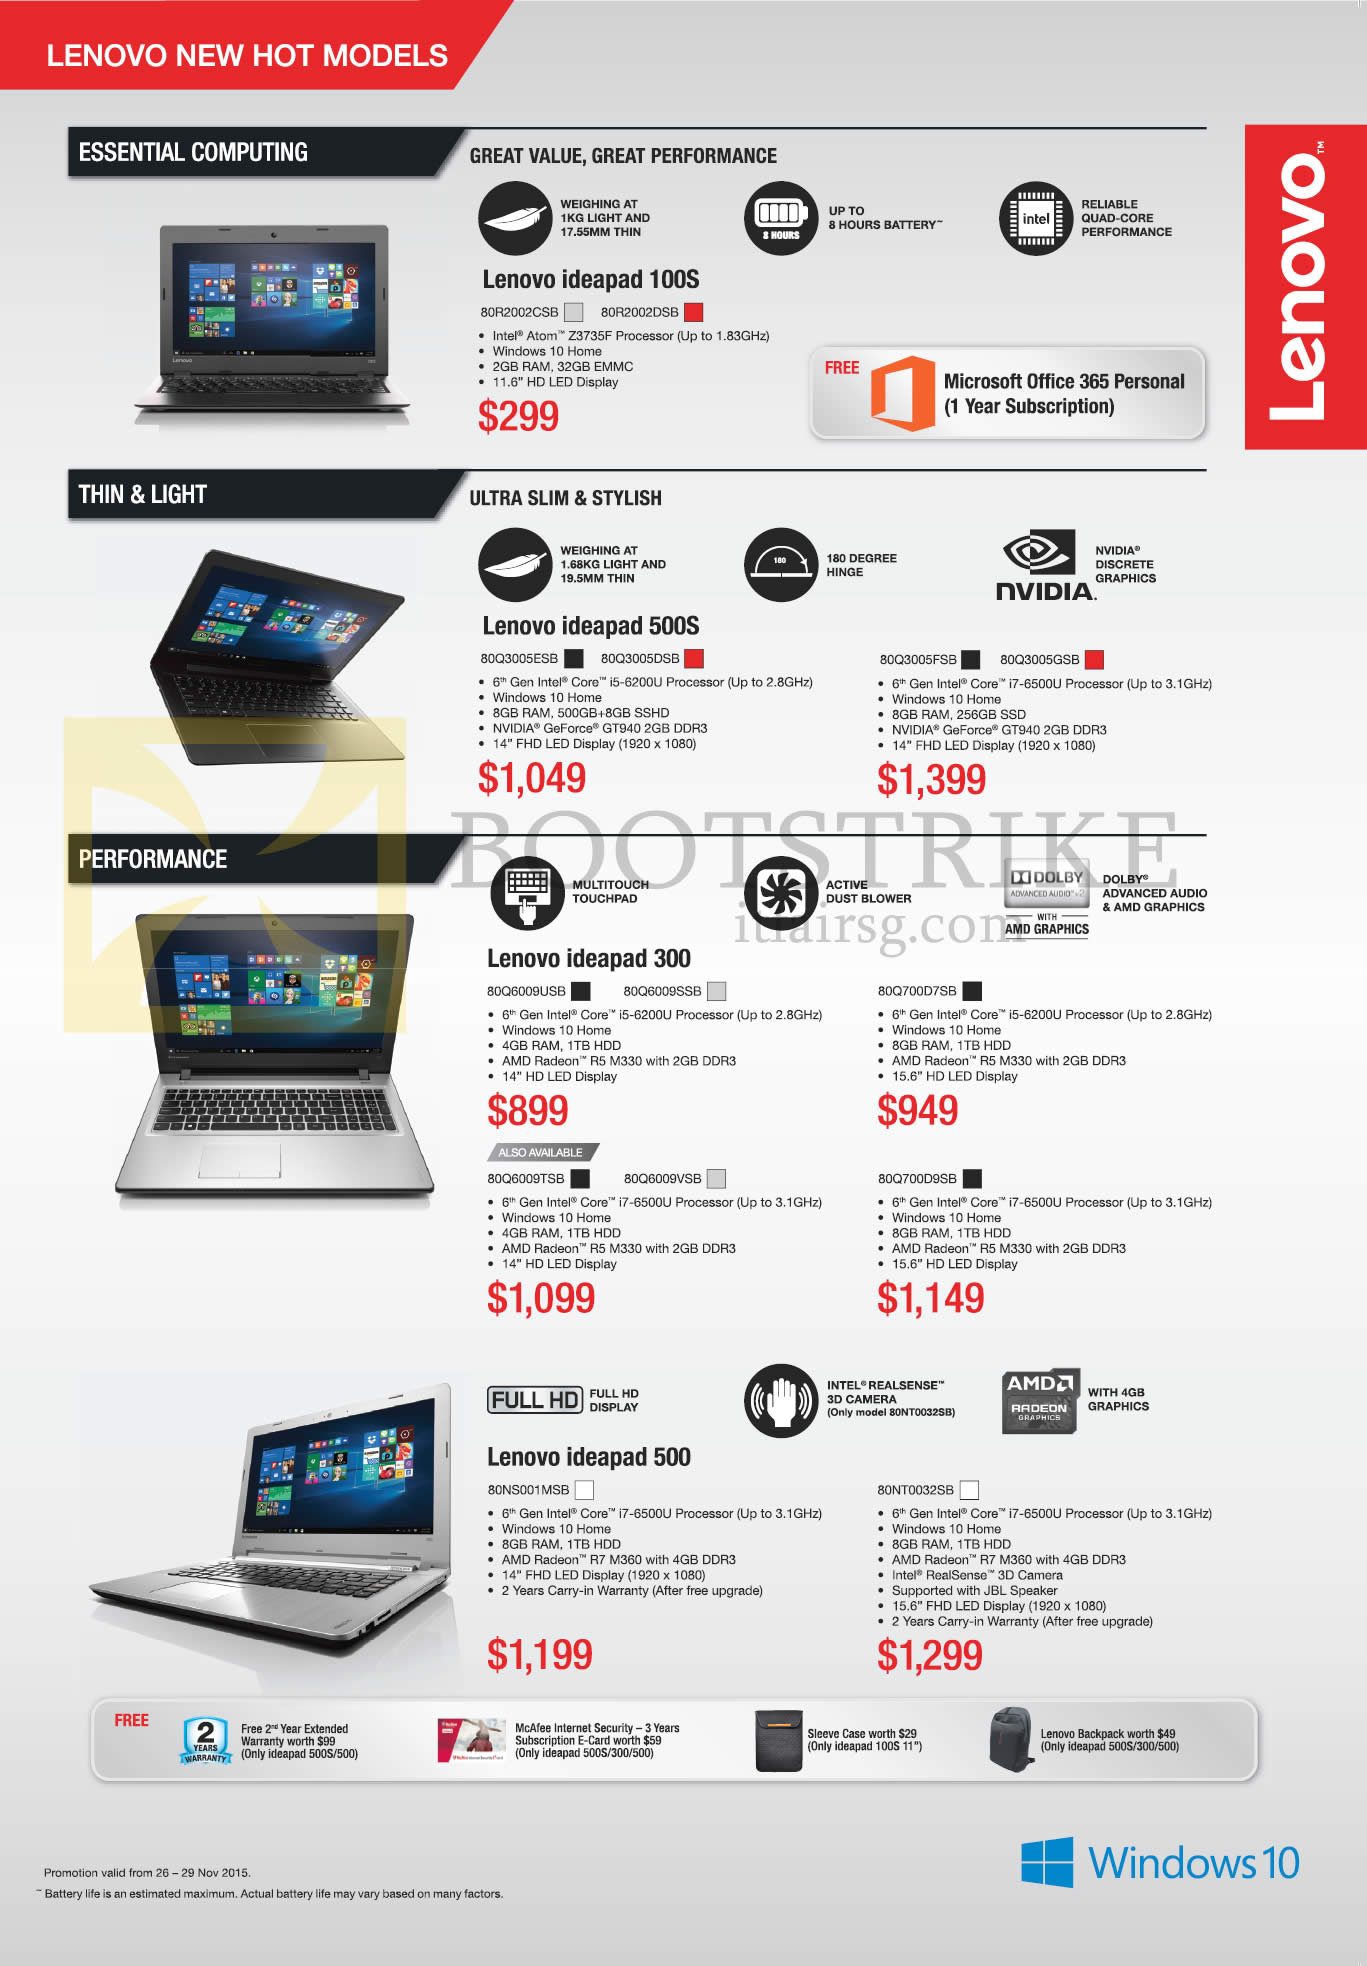 SITEX 2015 price list image brochure of Lenovo Notebooks Ideapad 100S 80R2002CSB, 80R2002DSB, Ideapad 500S 80Q3005ESB, 80Q3005DSB, 80Q3005FSB, 80Q3005GSB, Lenovo Ideapad 300 80Q6009USB, 80G6009TSB